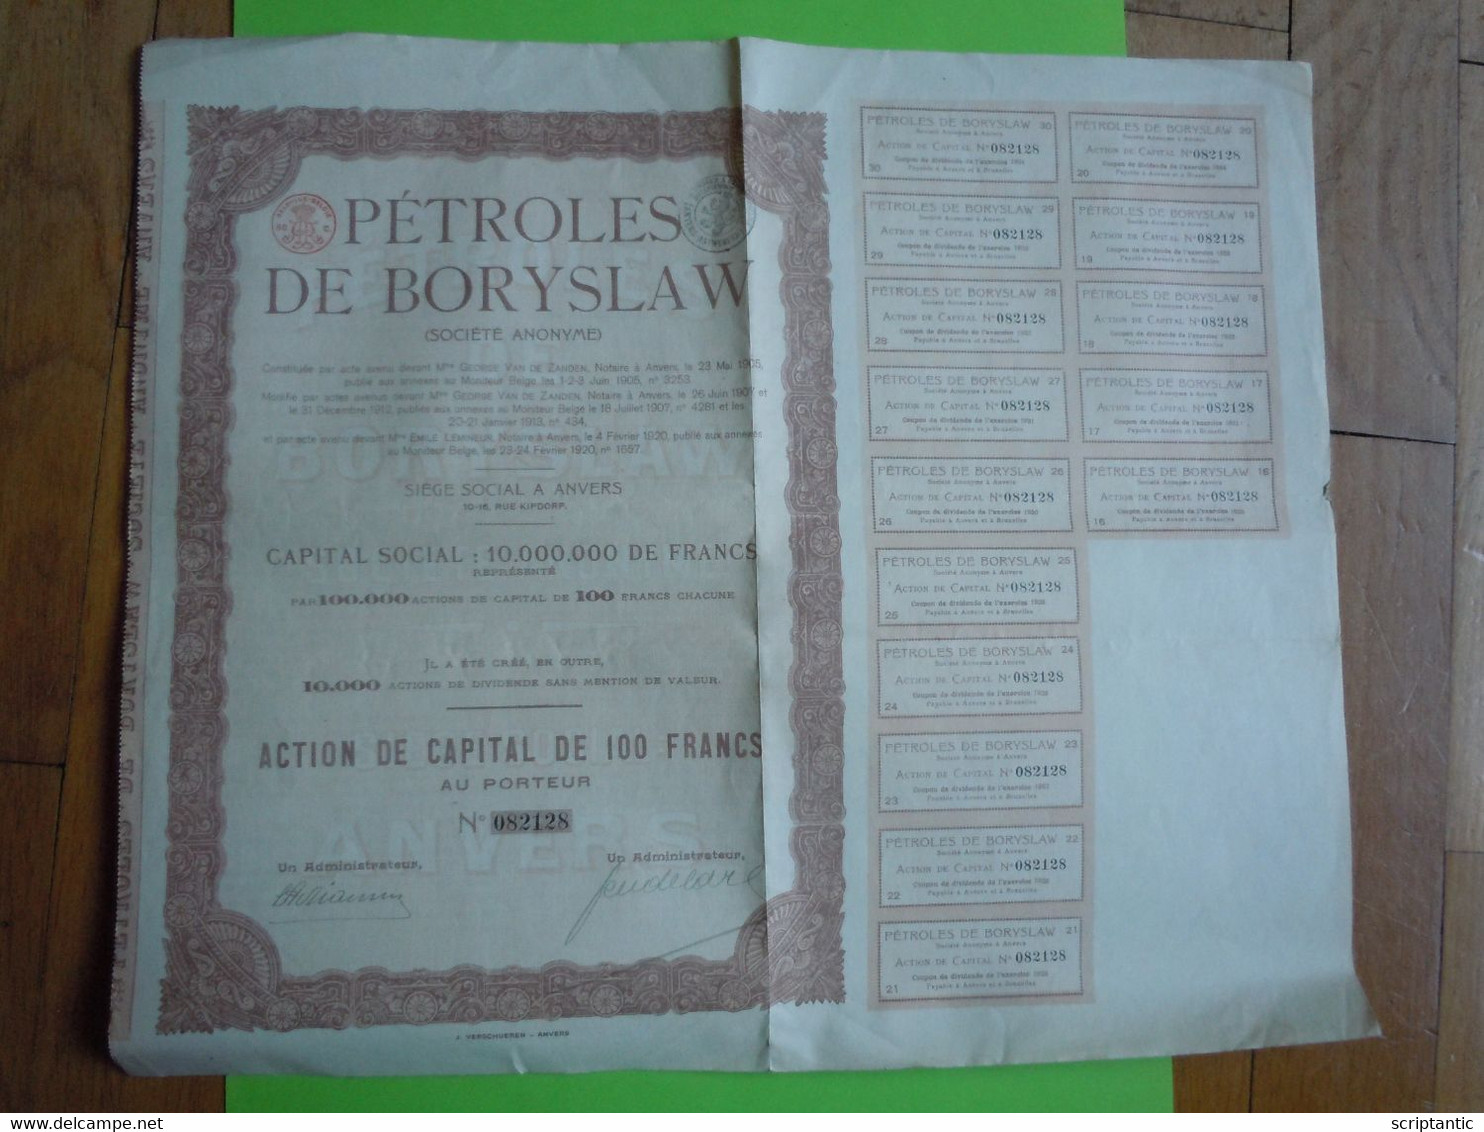 POLOGNE / PETROLES DE BORYSLAW 1920 - Oil